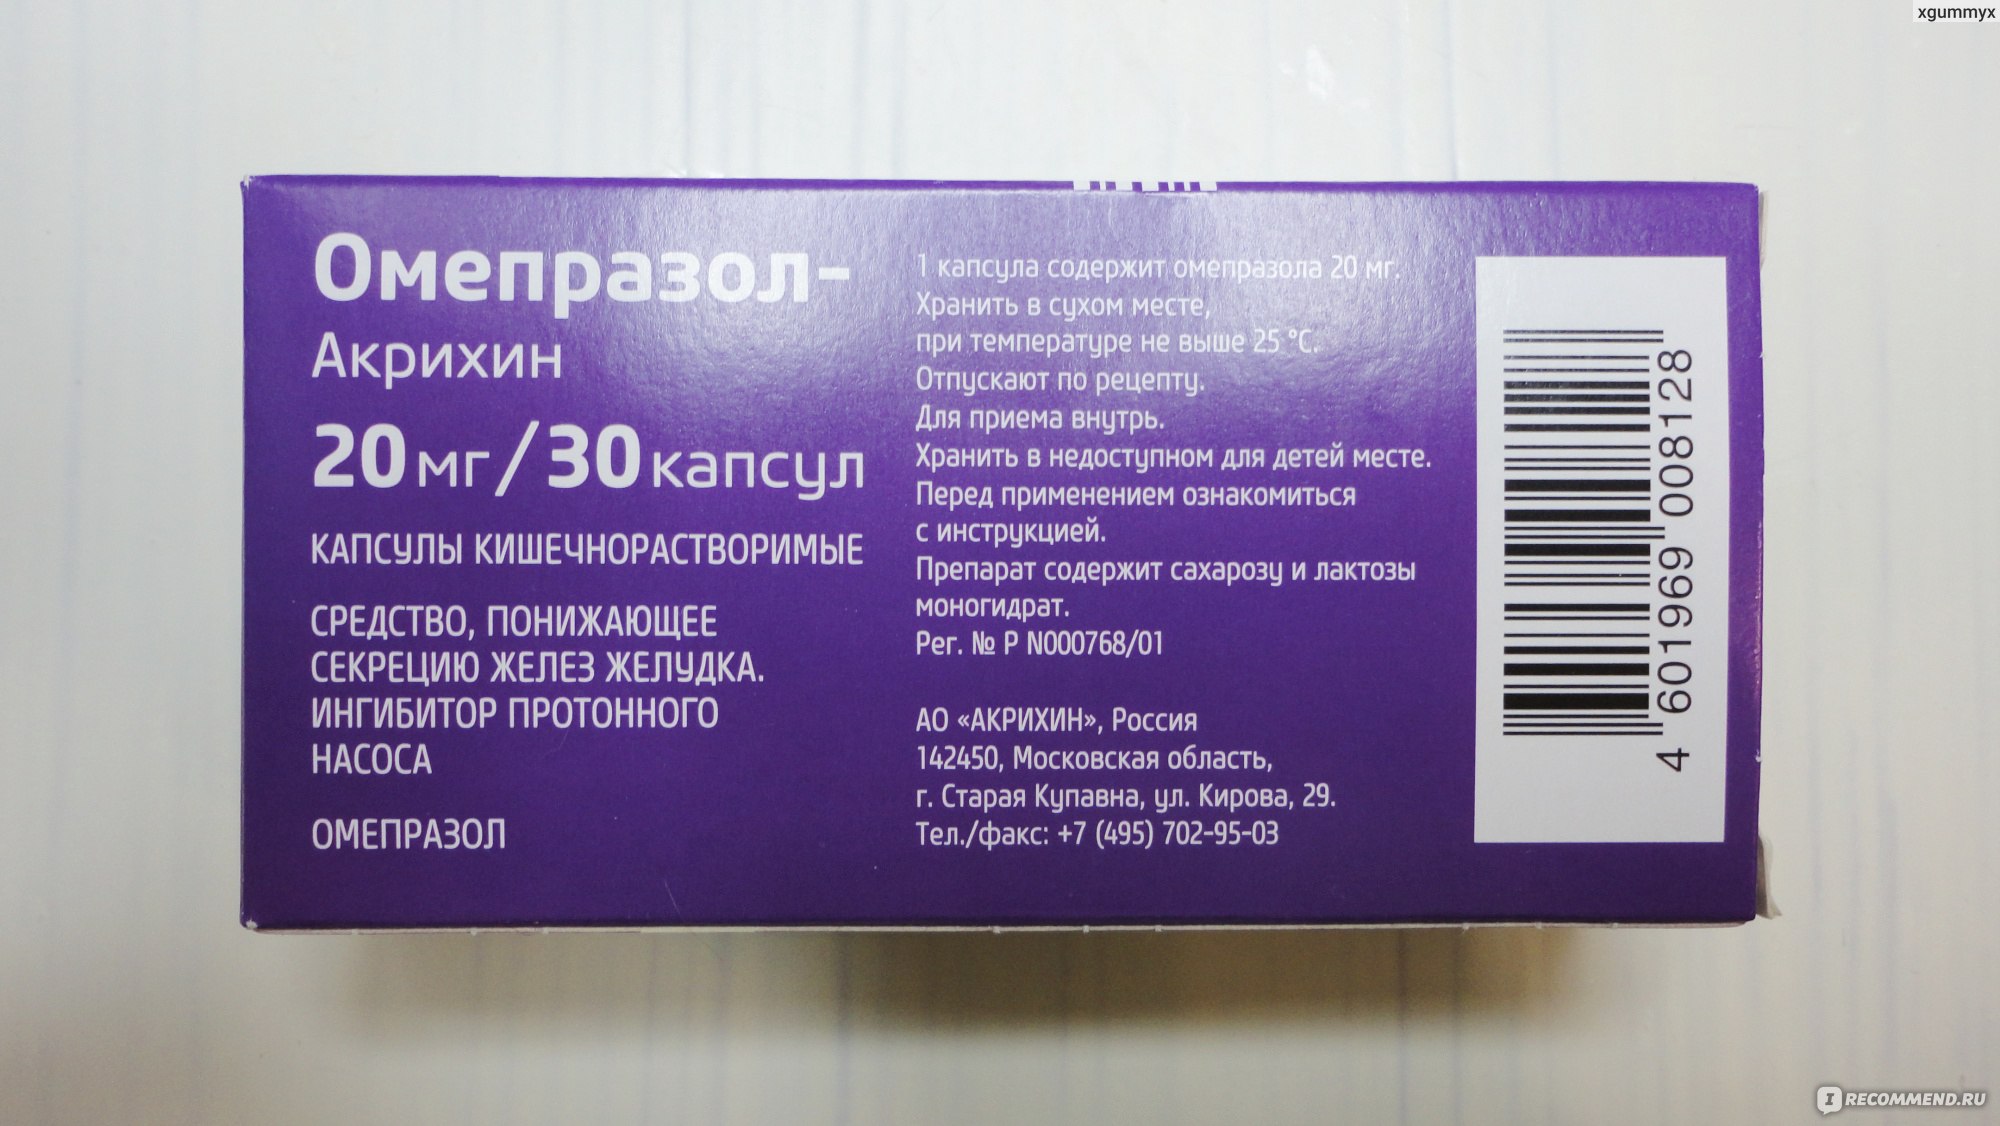 Чем вреден омепразол. Омепразол Акрихин. Омепразол в фиолетовой упаковке. Омепразол таблетки. Омепразол-Акрихин капсулы кишечнорастворимые.